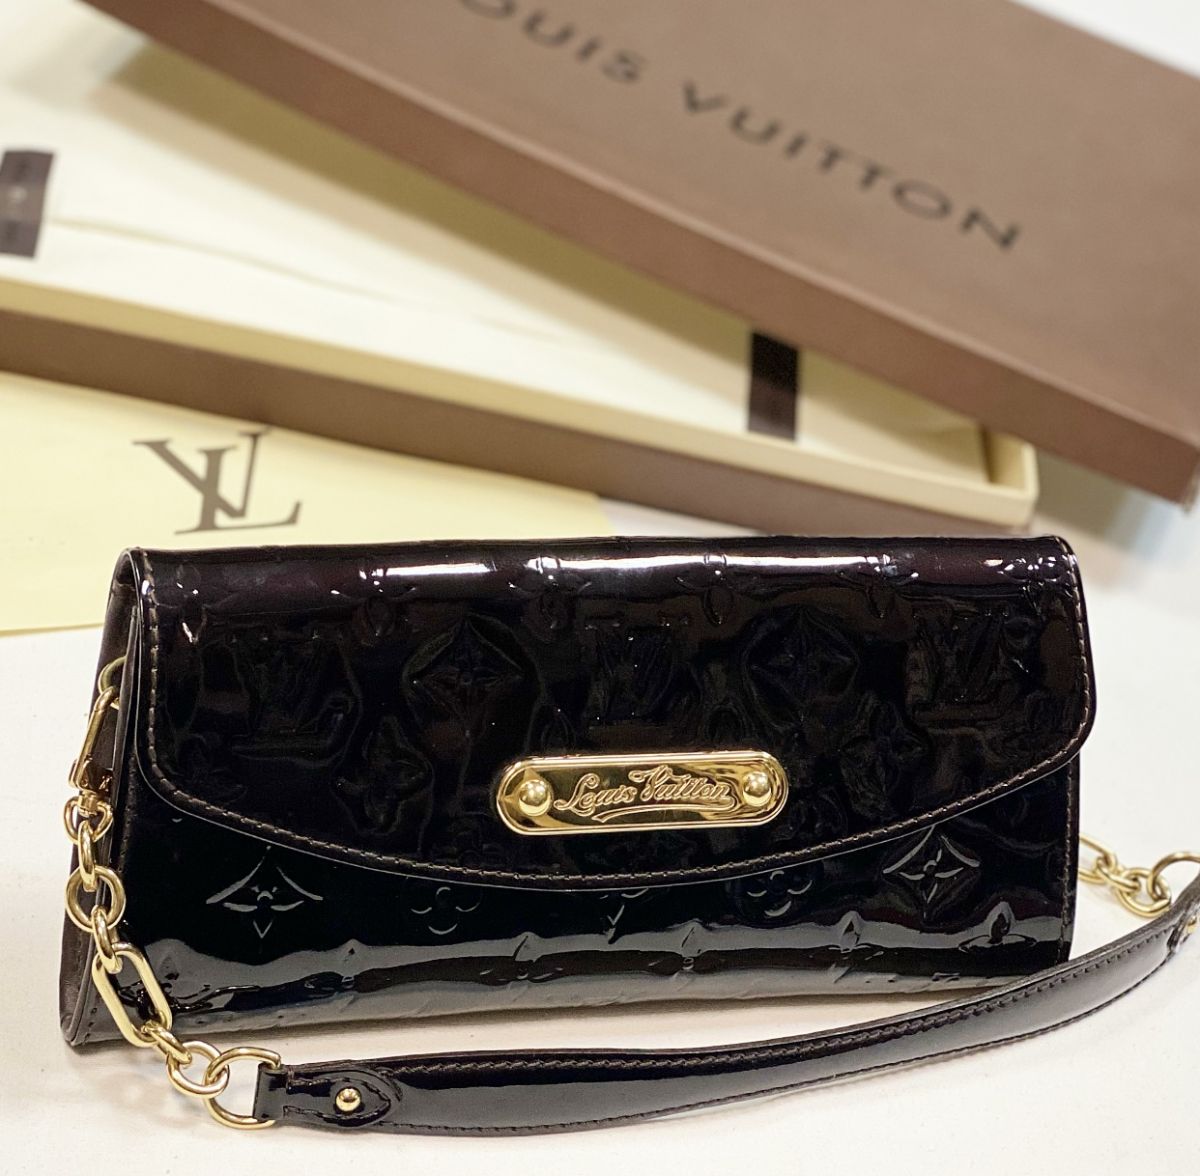 Сумочка Louis Vuitton размер 24/11 цена 38 463 руб 